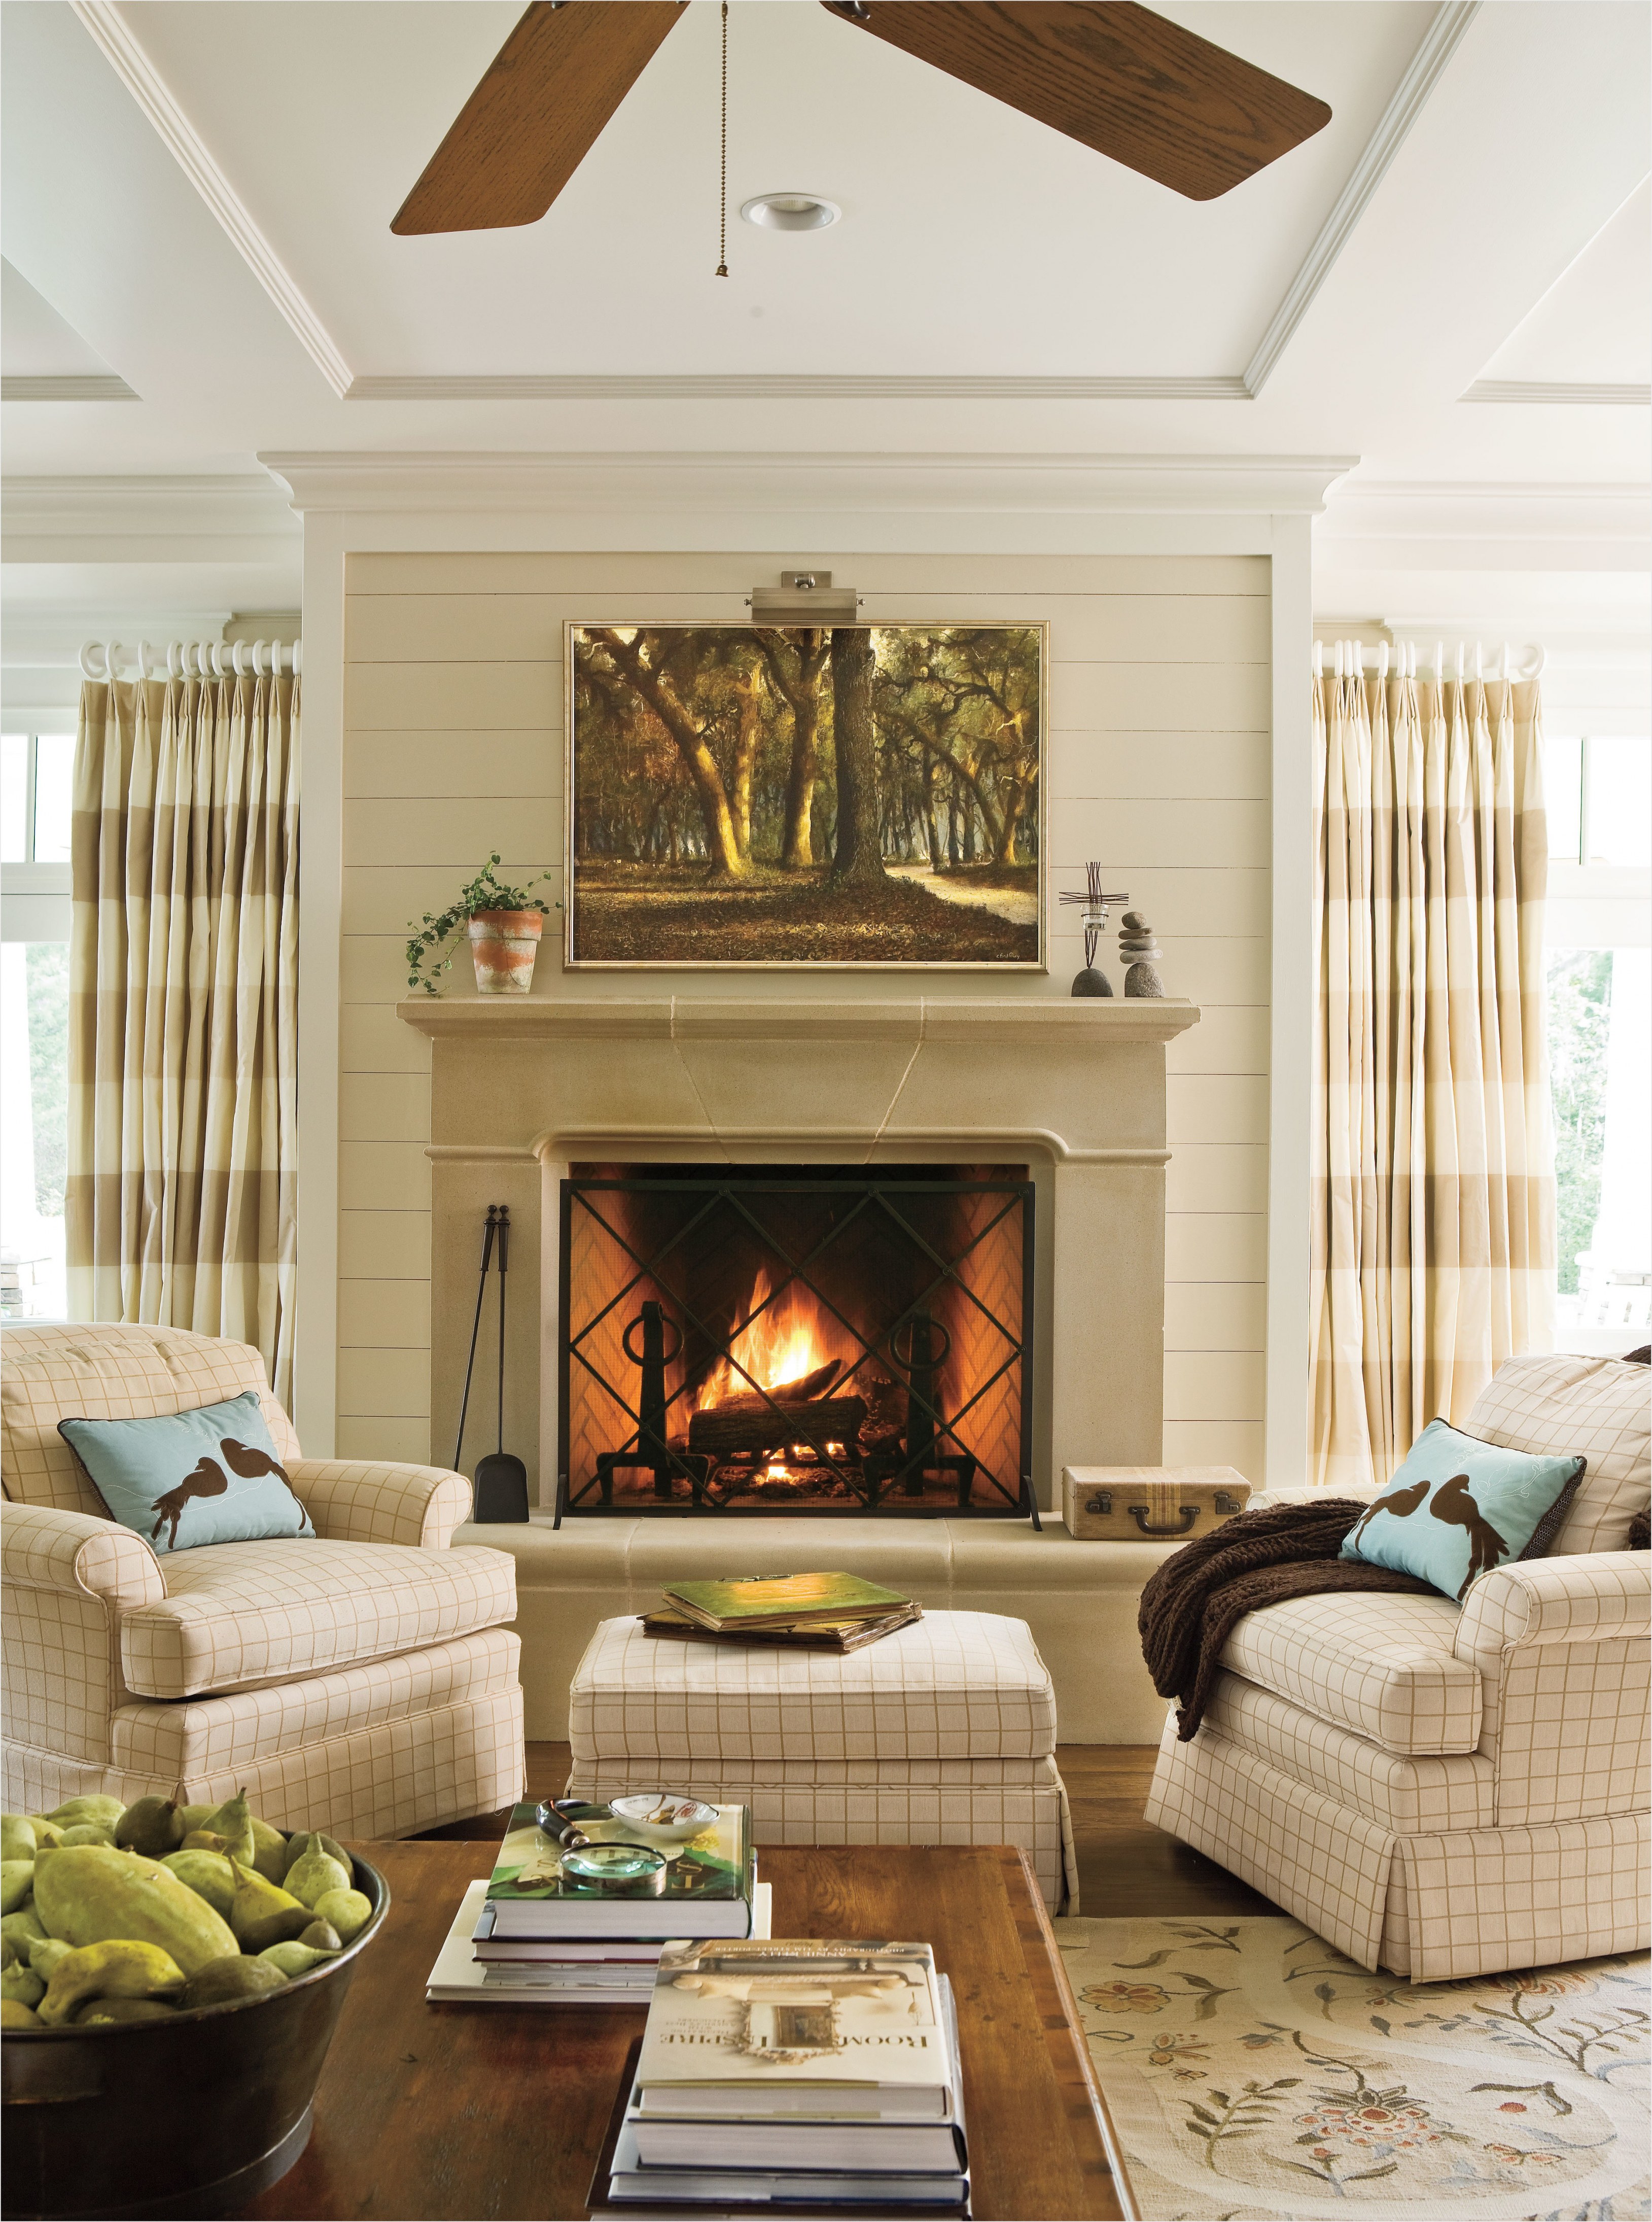 Kirkland Fireplace Best Of Home Decoration Ideas Modern Fireplace Designs Inspirational